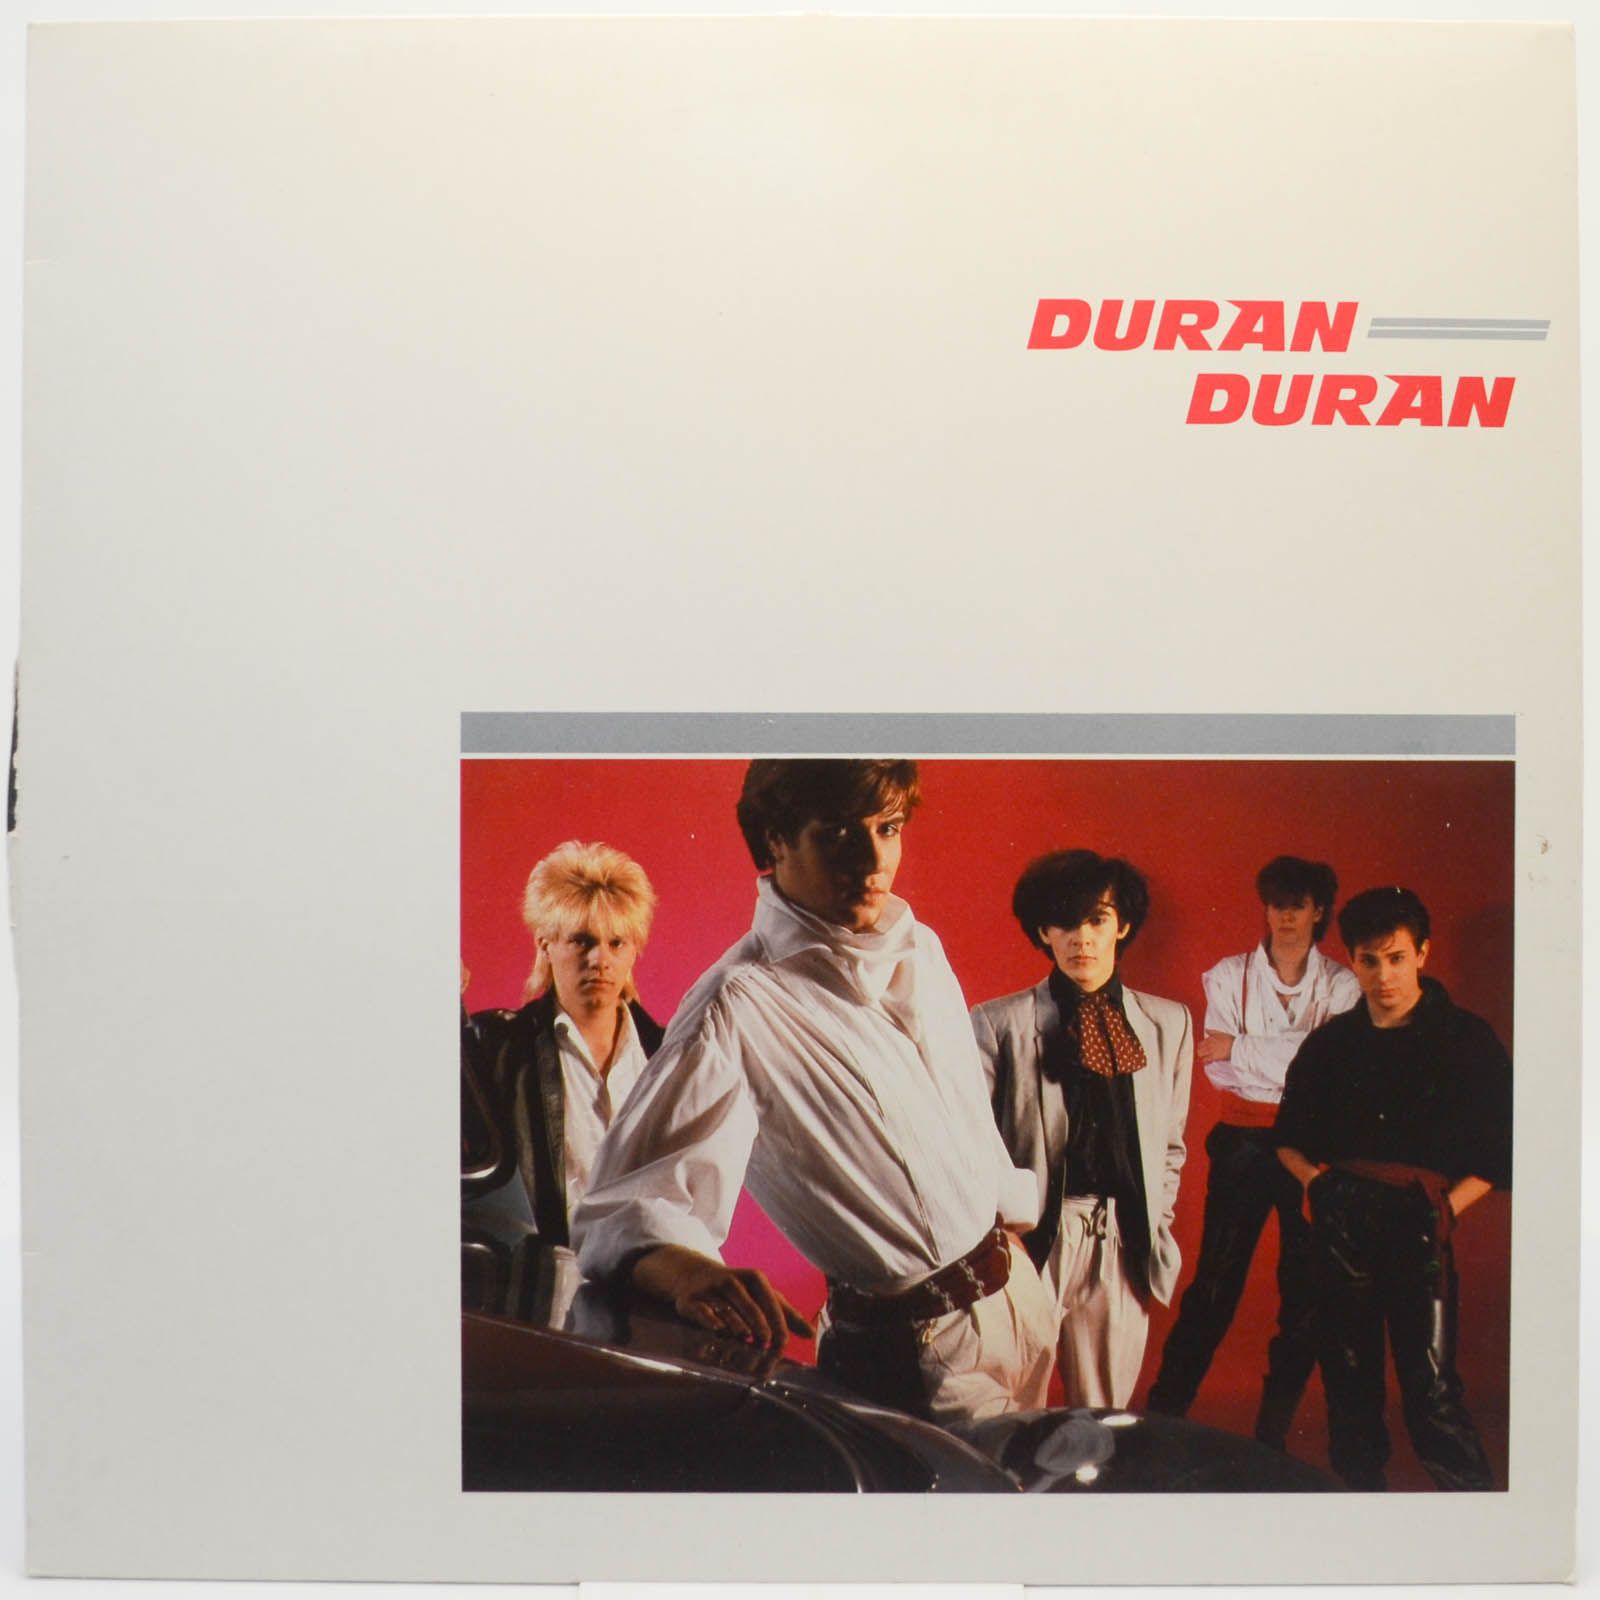 Duran Duran — Duran Duran, 1981